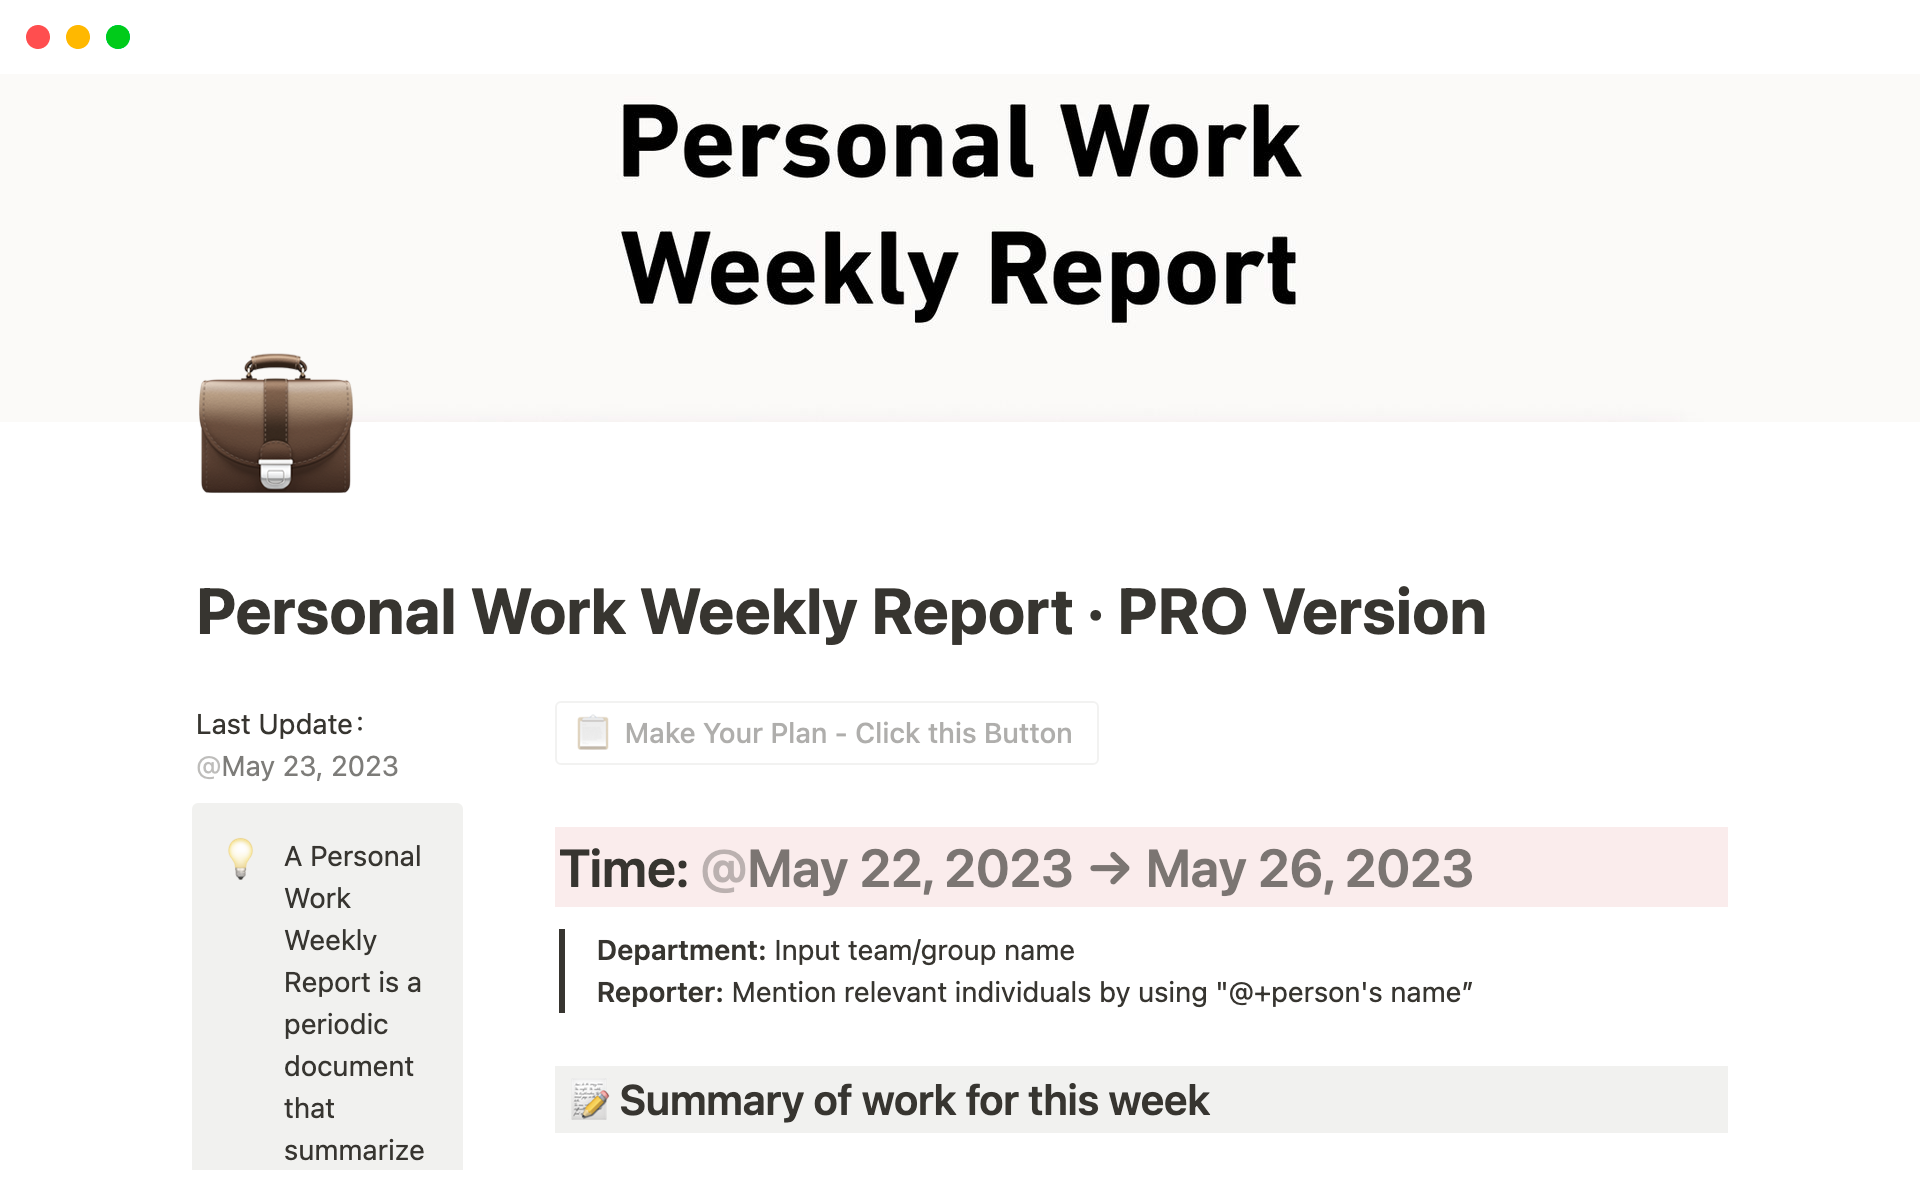 Uma prévia do modelo para Personal Work Weekly Report